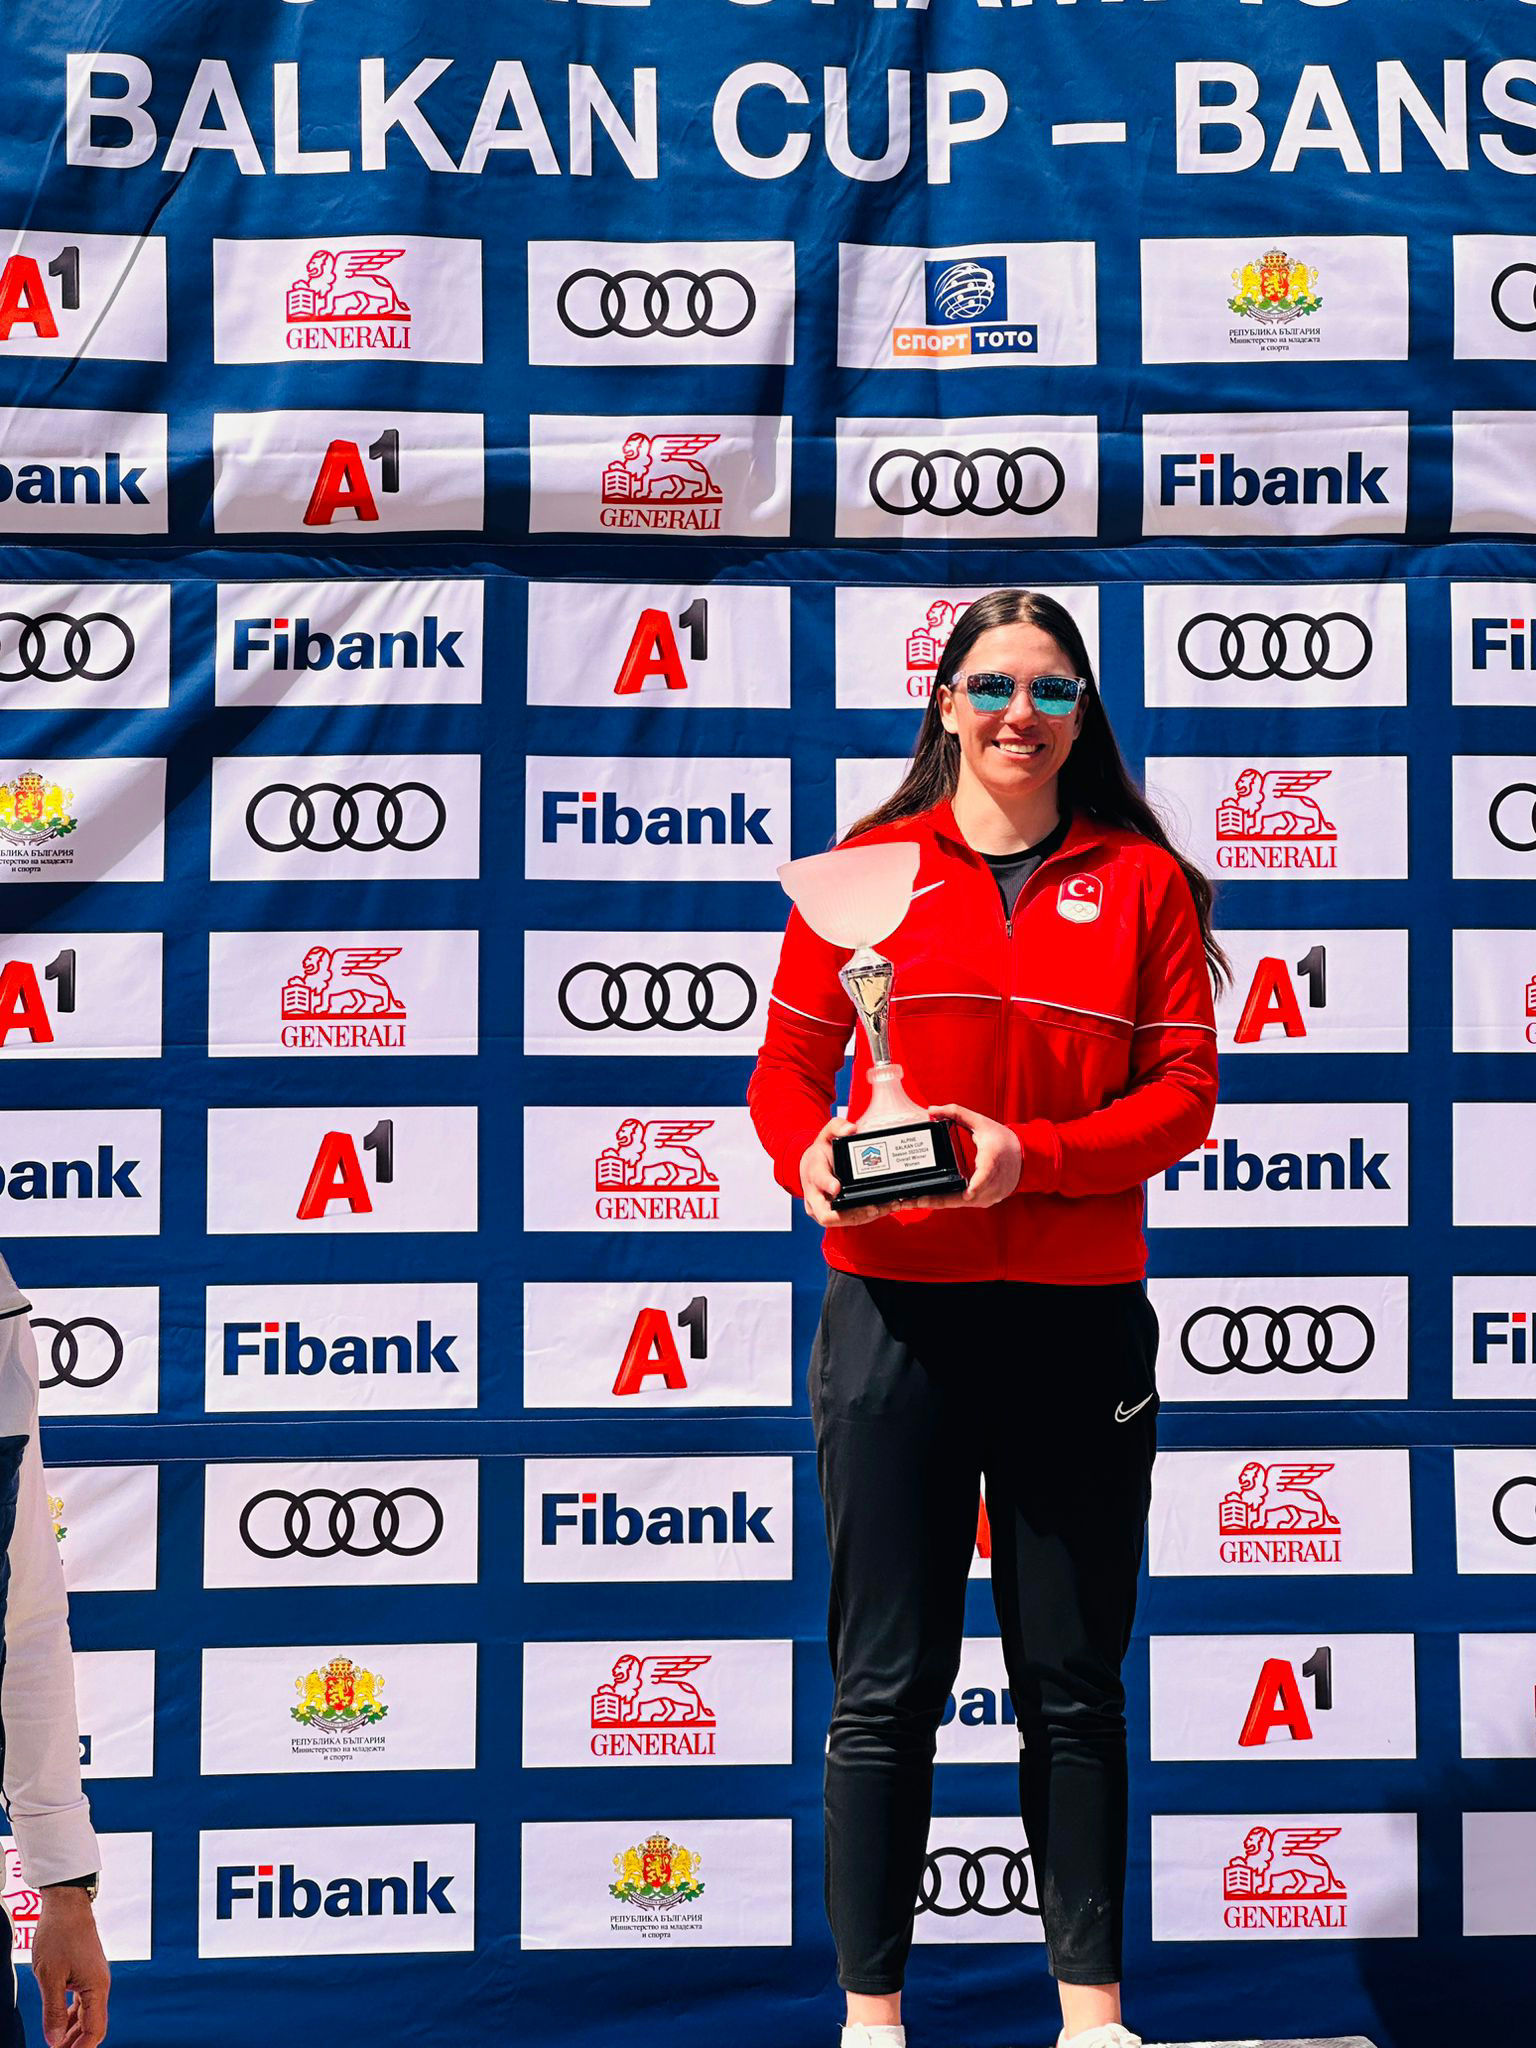 ⛷Alp Disiplini Kayak Milli Takımı sporcusu Ceren Reyhan Yıldırım, kadınlarda ilk defa genel toplamda Balkan şampiyonu oldu. 🇹🇷👏🏻